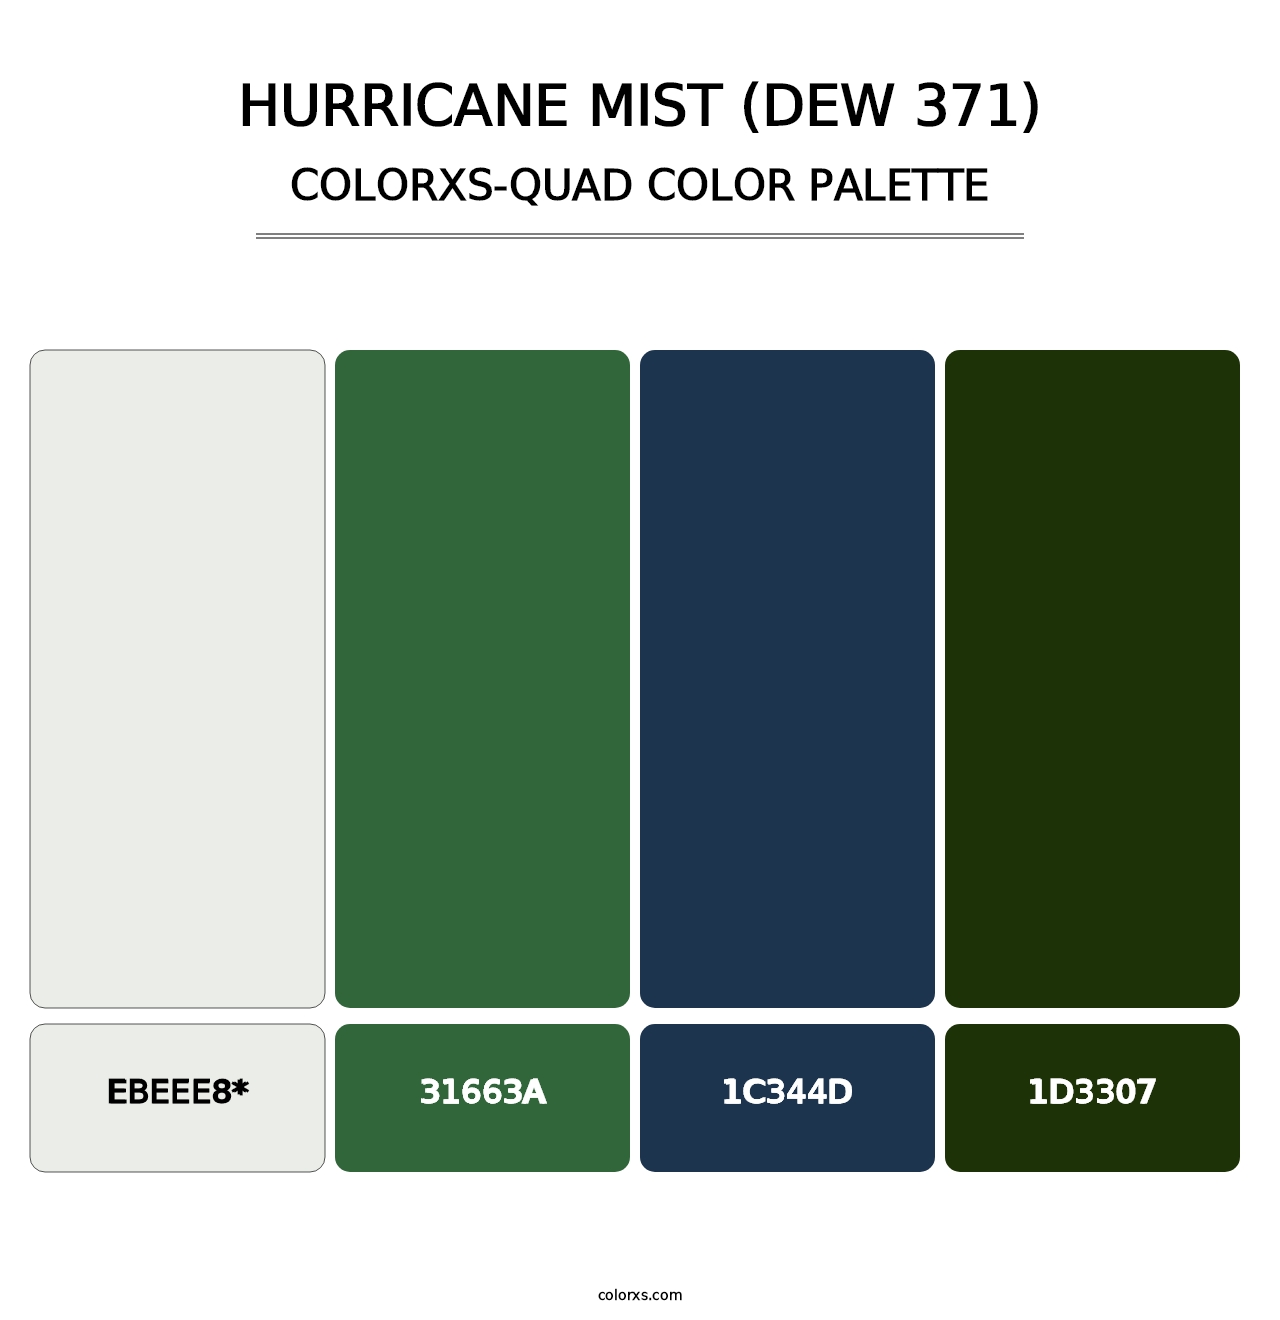 Hurricane Mist (DEW 371) - Colorxs Quad Palette